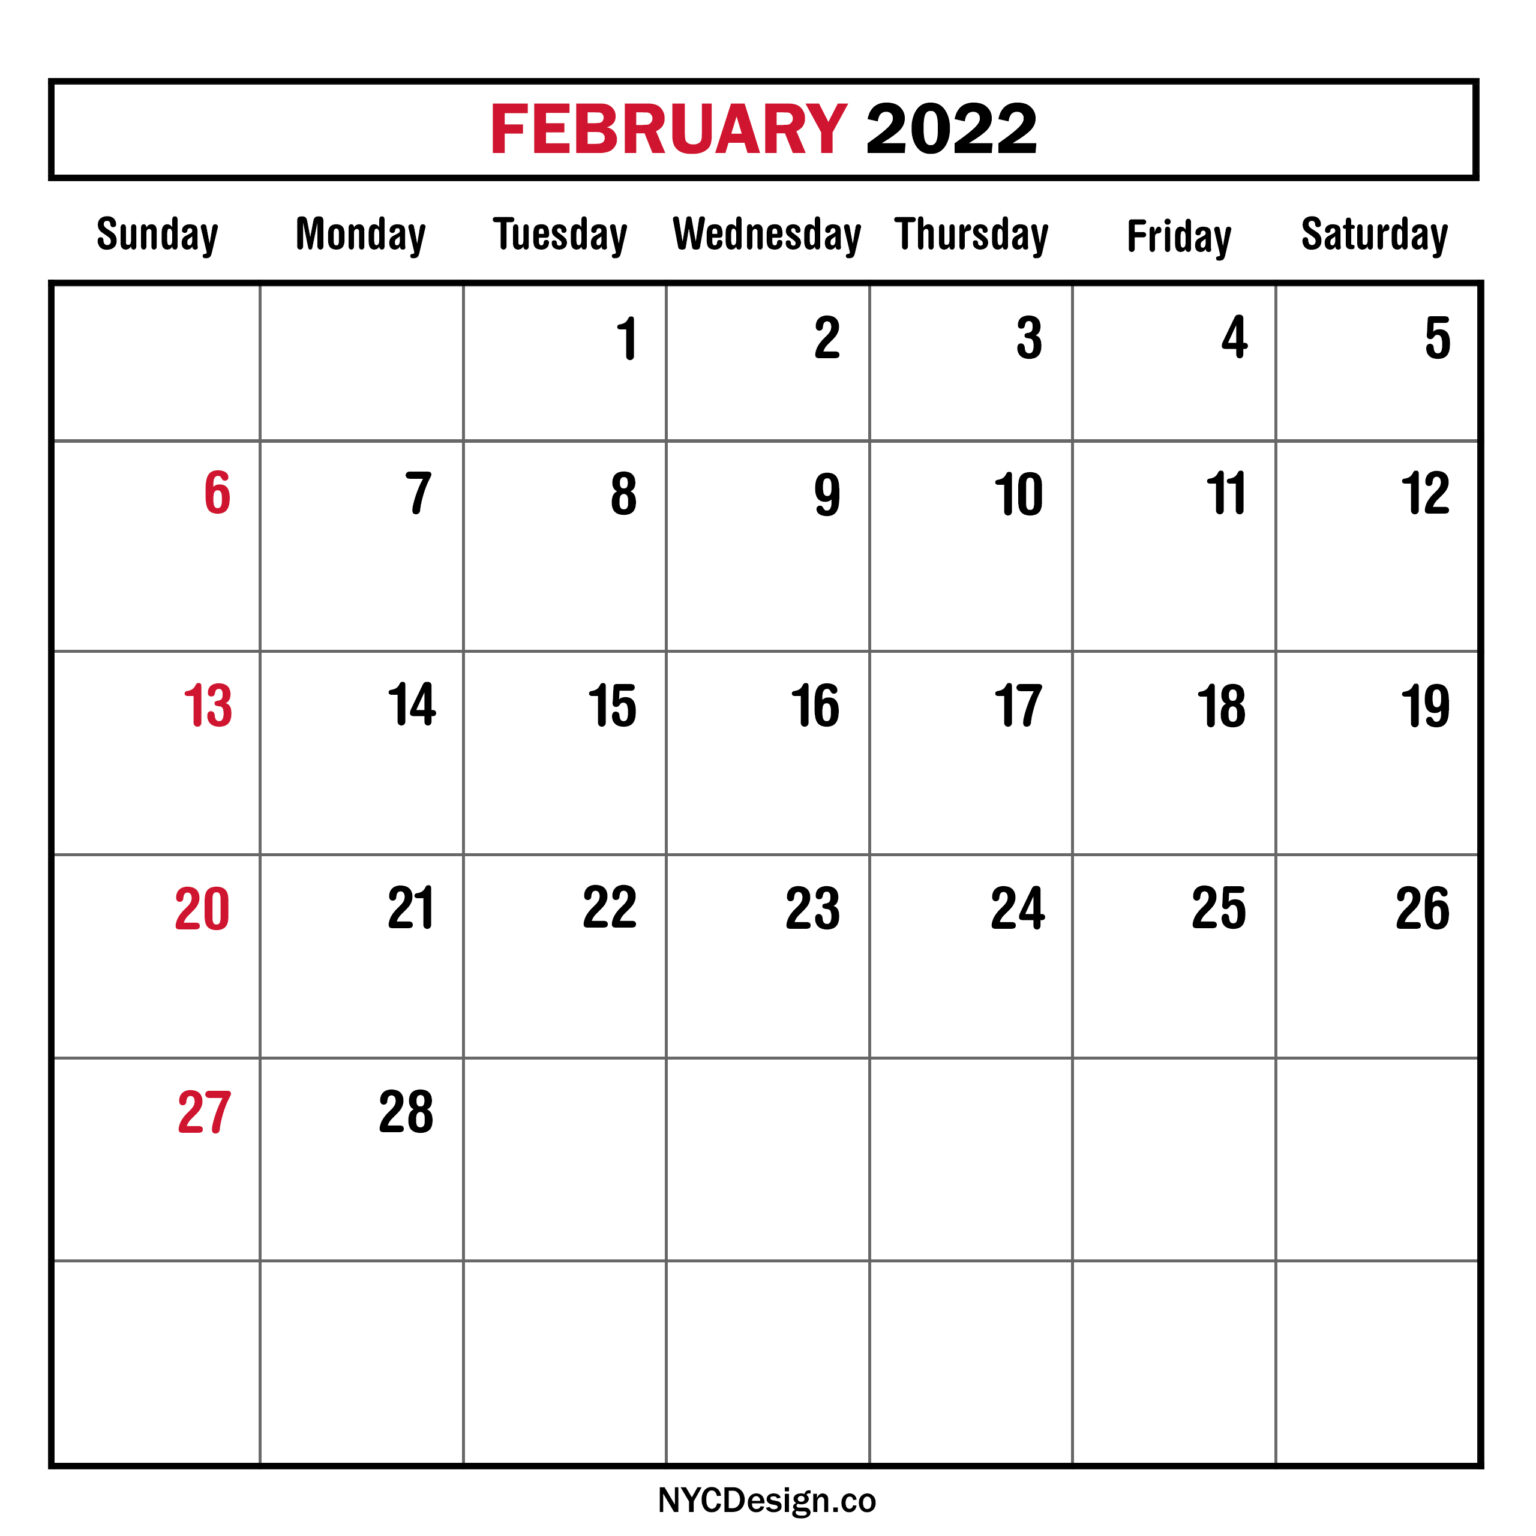 February 2022 Monthly Calendar, Planner, Printable Free – Sunday Start ...